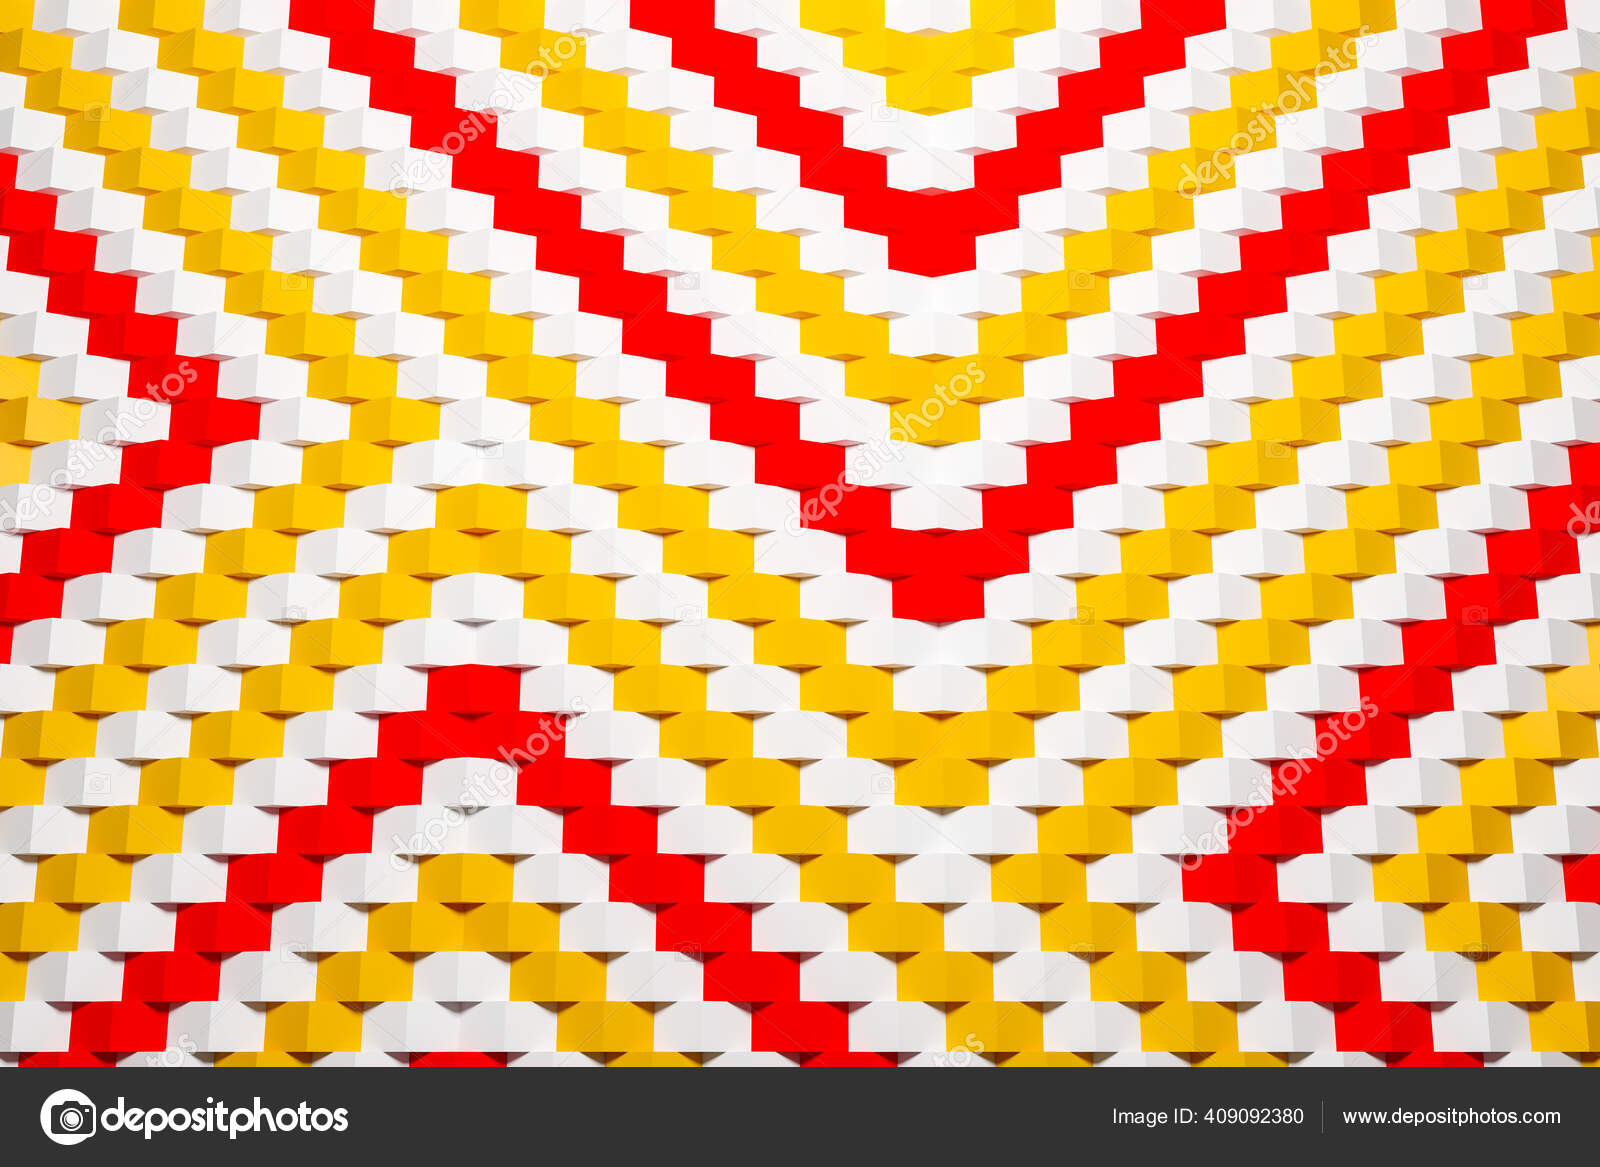 Ilustração 3d padrão geométrico quadriculado preto e amarelo das